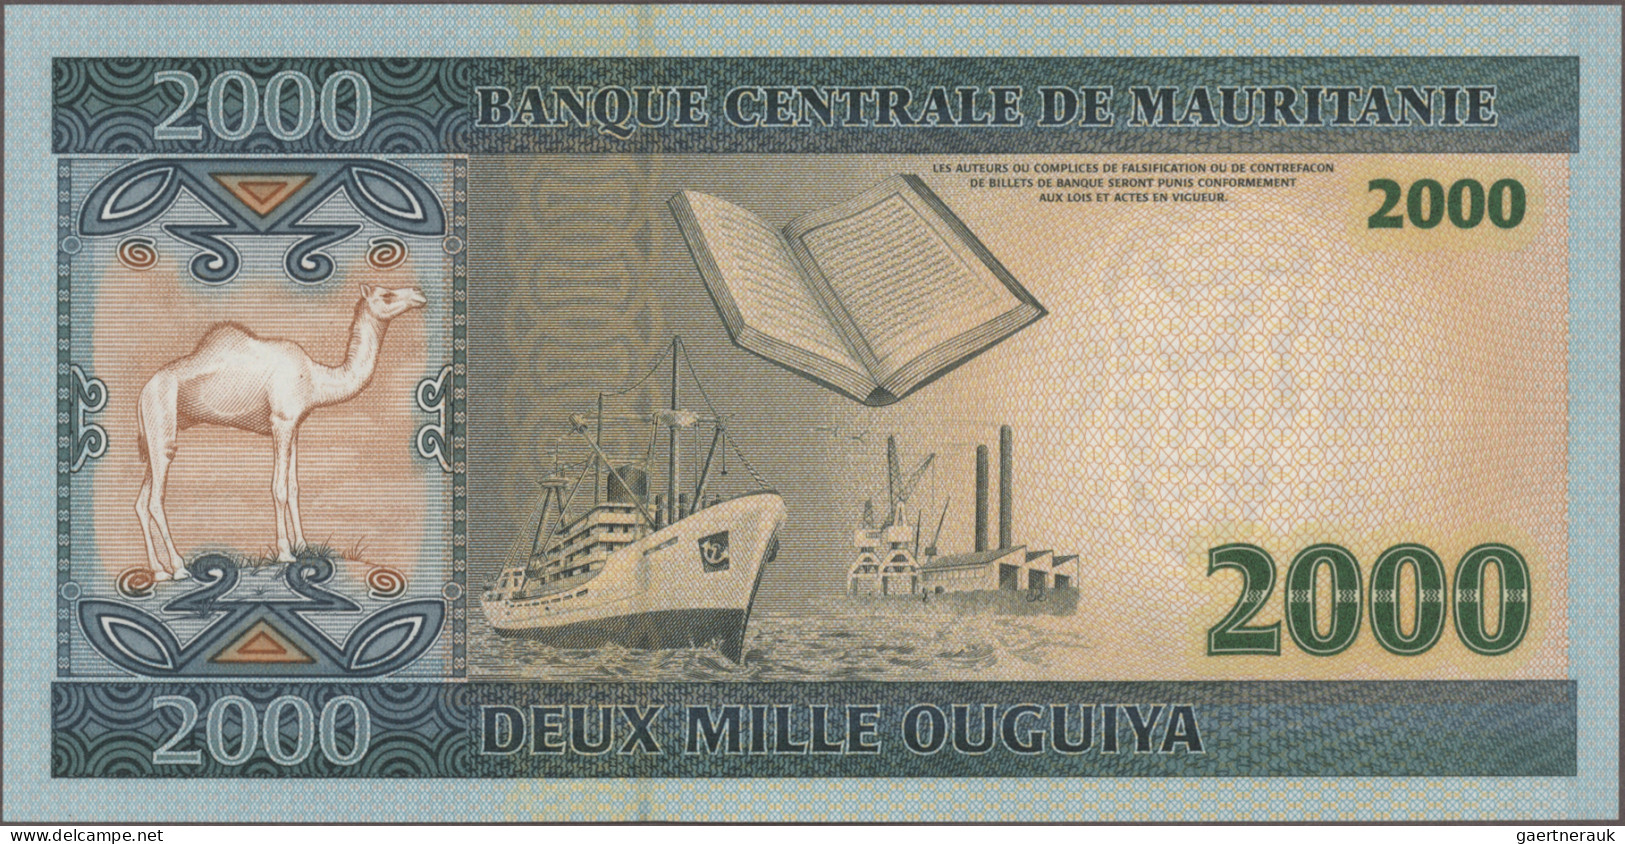 Mauritania: Banque Centrale De Mauritanie, Huge Lot With 14 Banknotes, 1985-2012 - Mauritanië